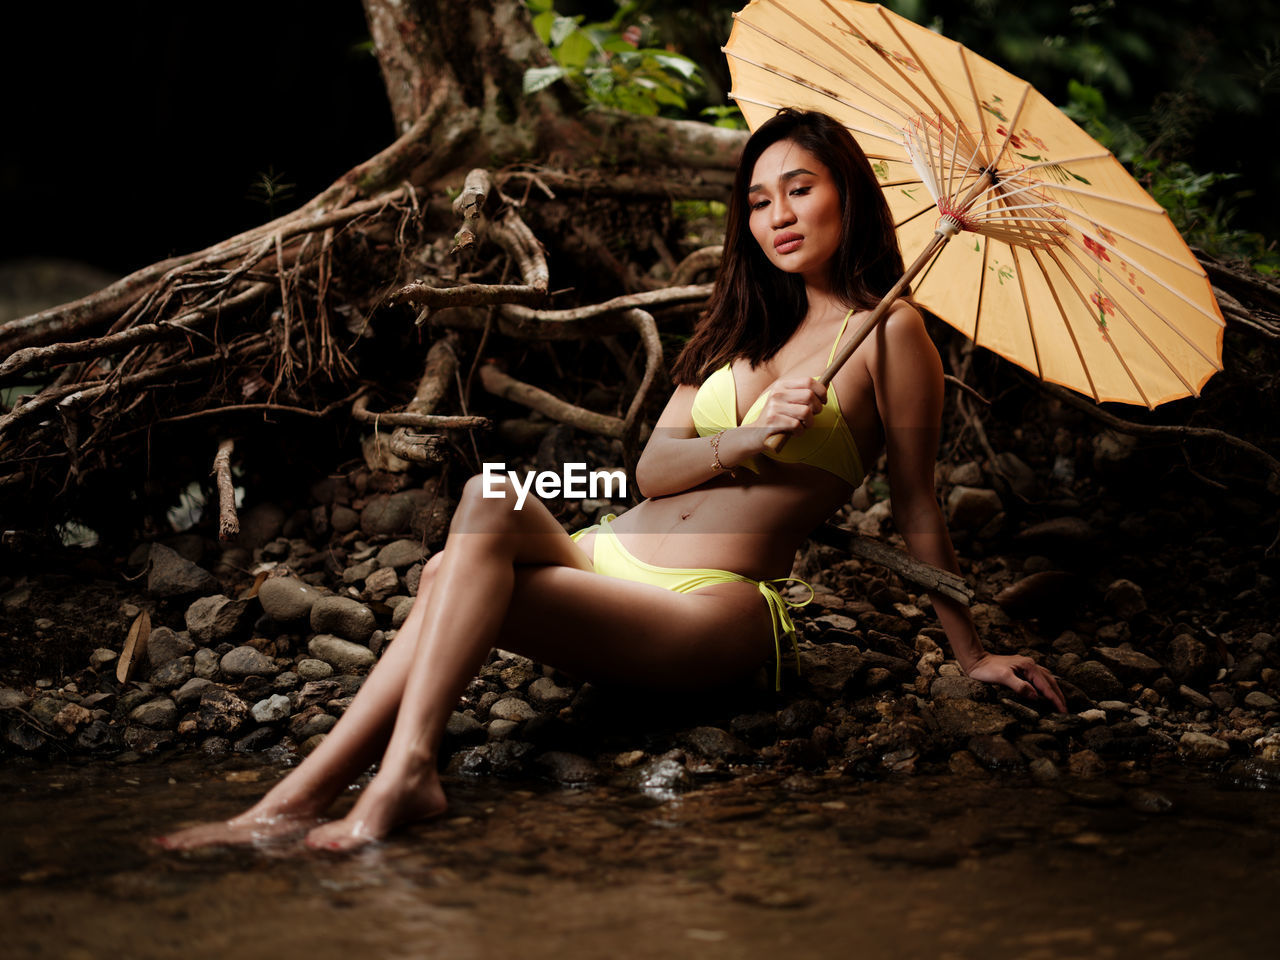 Portraiture shot of a beautiful asian female model in bikini at a river